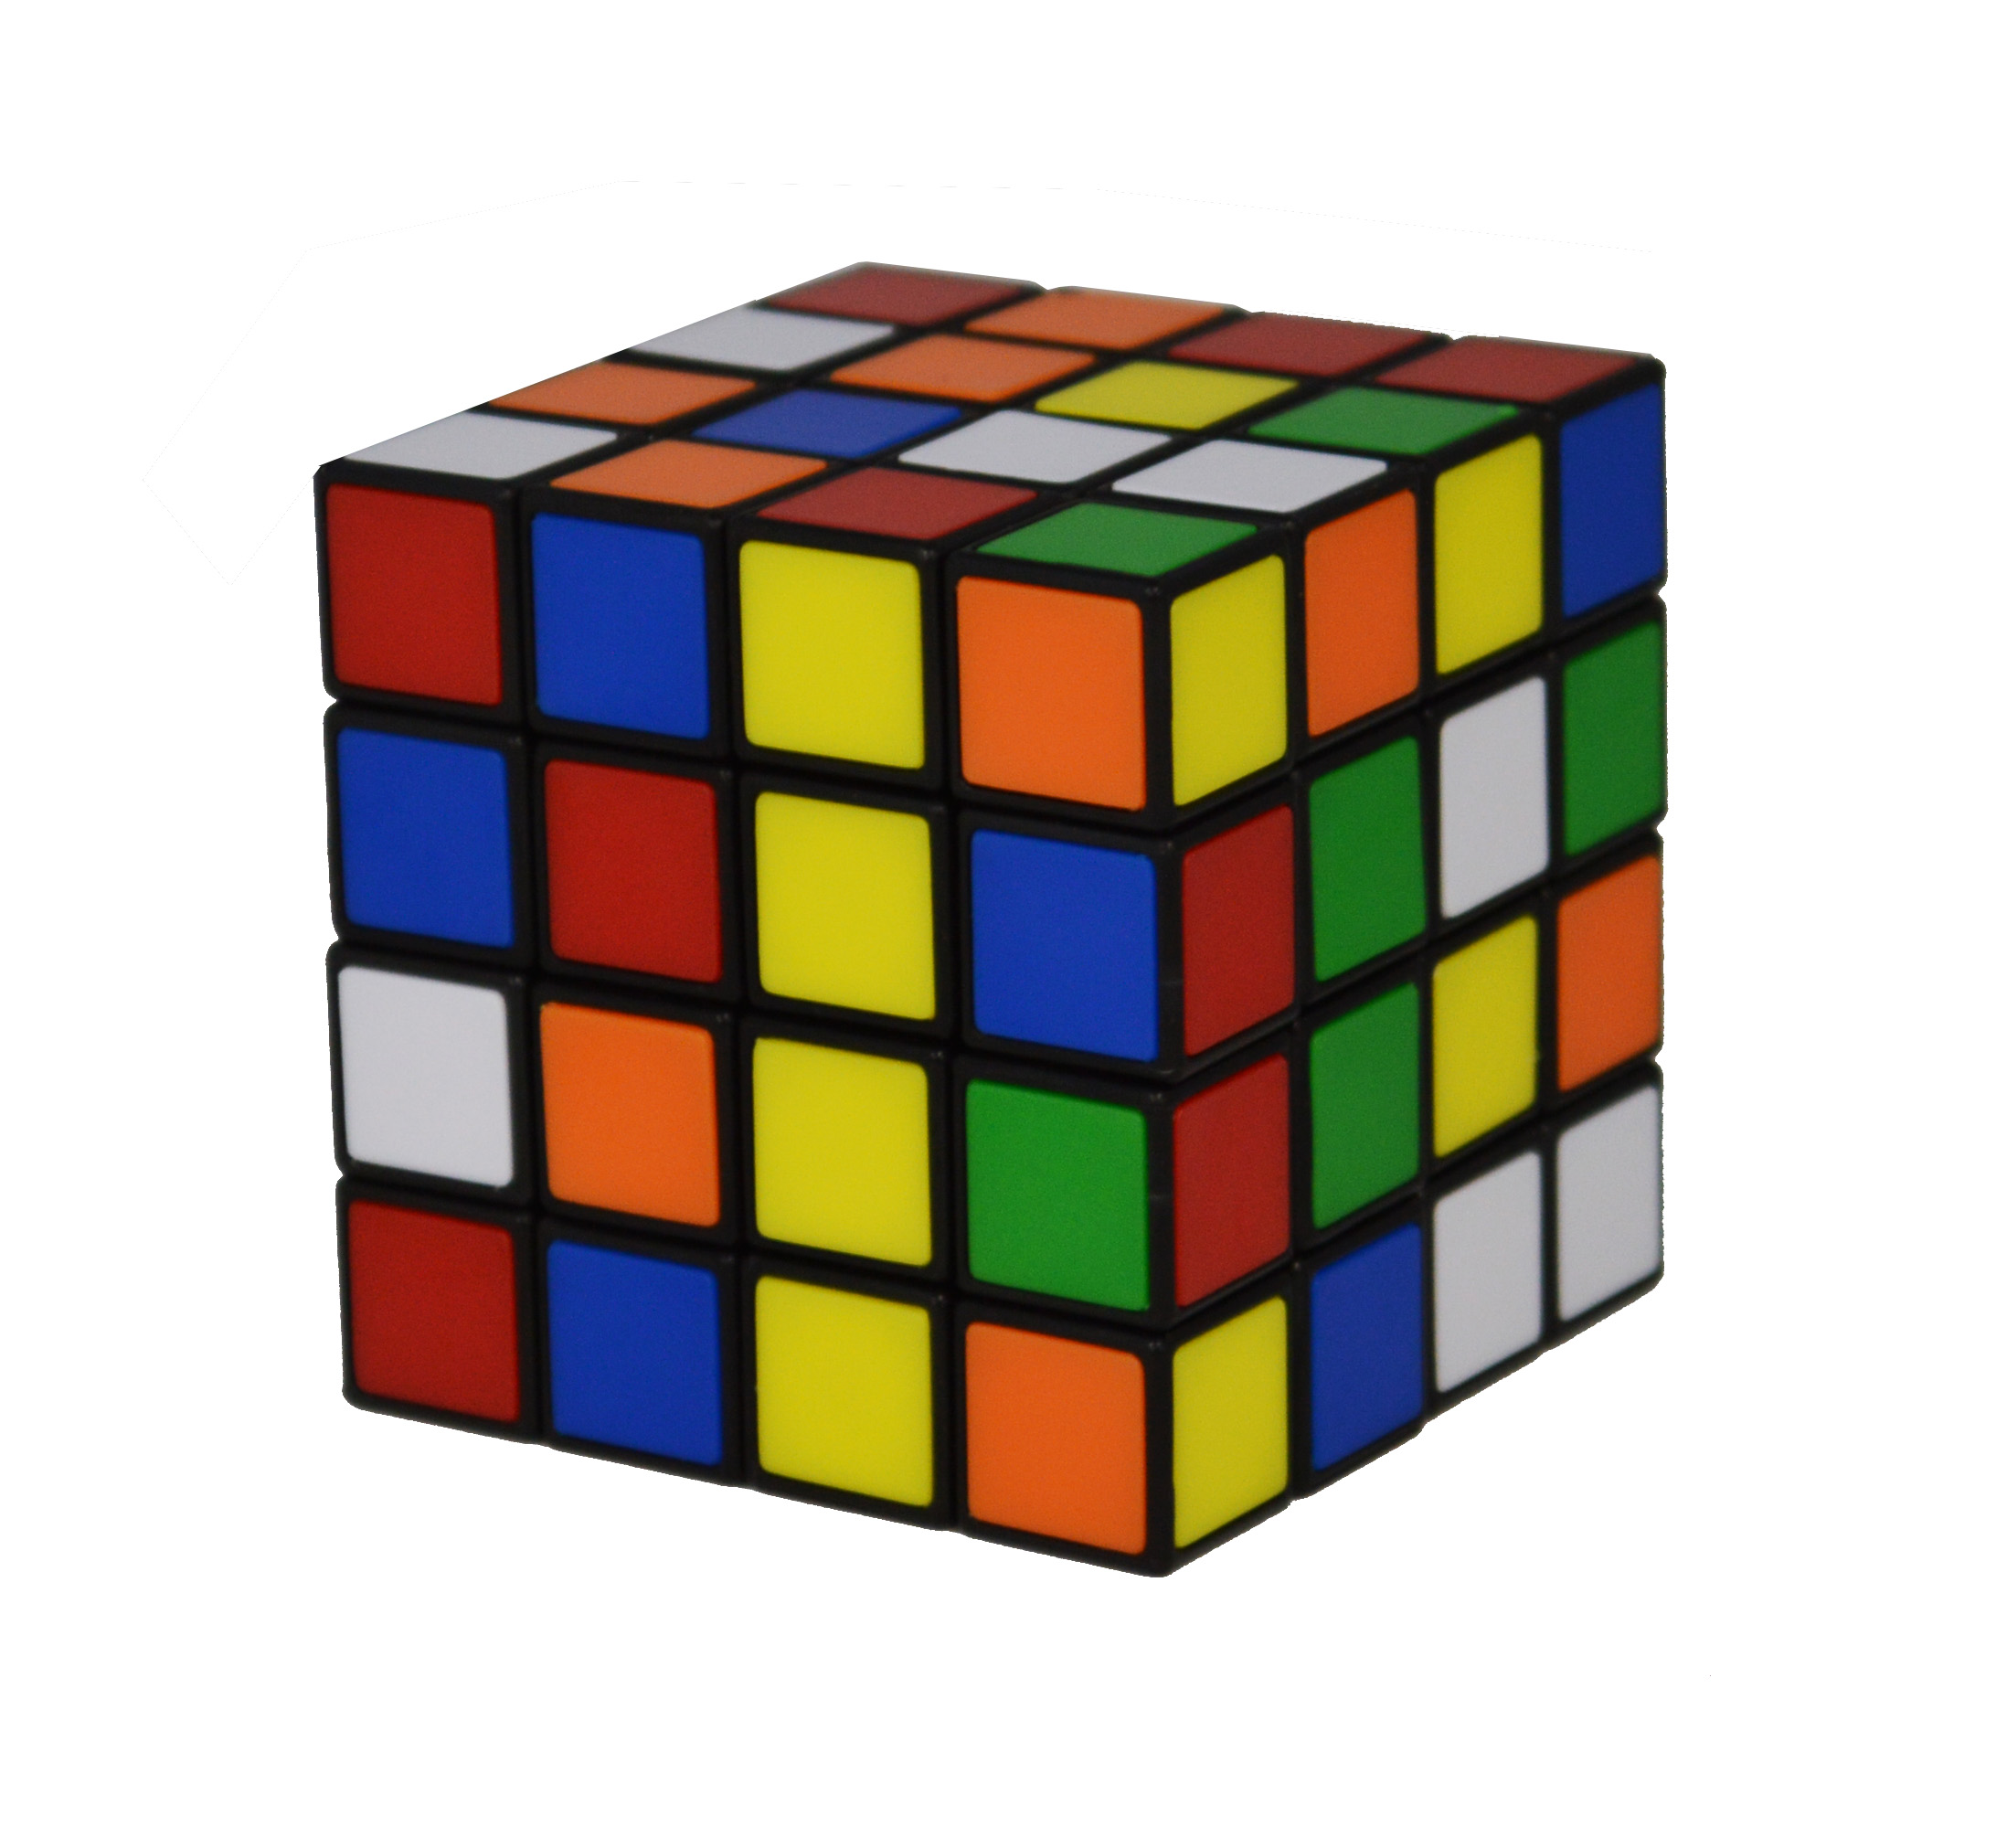  ルービックキューブ4×4 ver.2.1【公式ライセンス商品】